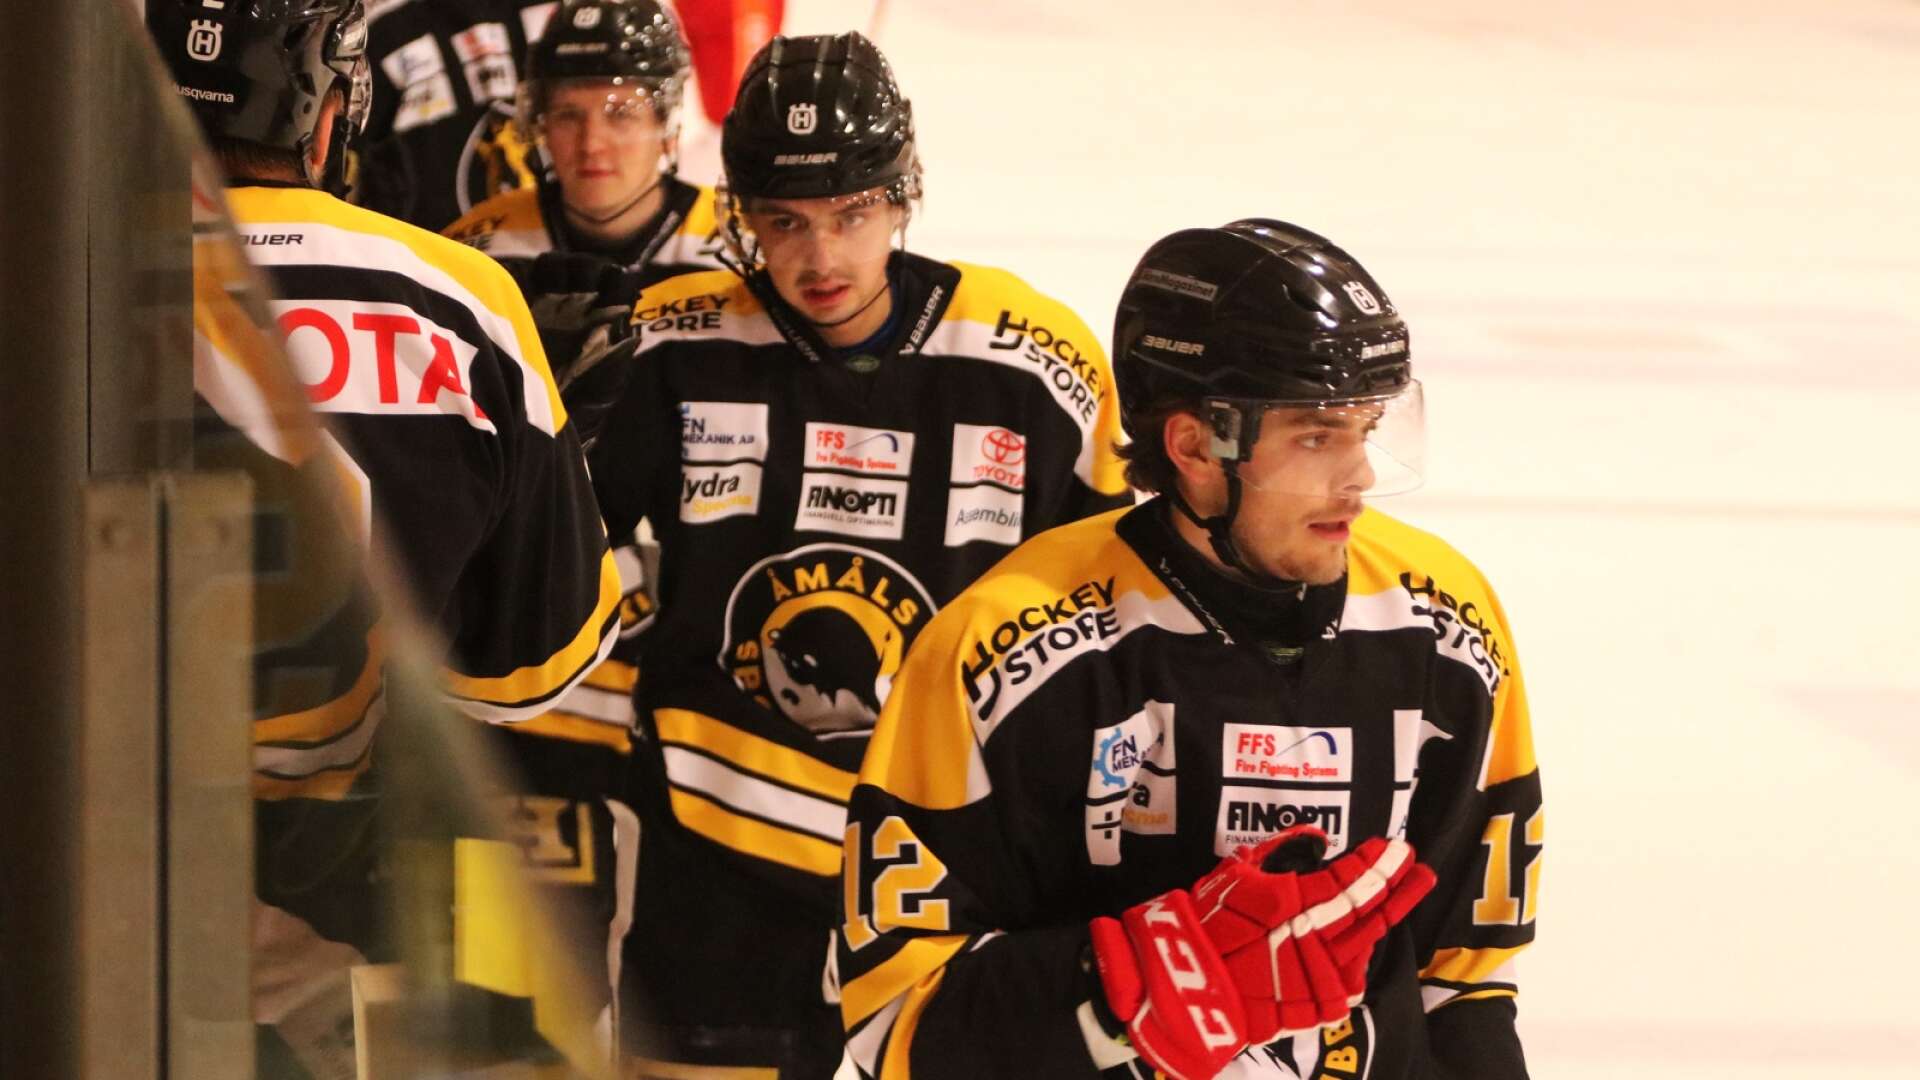 Michal Matiasko, närmast kameran, och hans tjeckiske landsman Erik Cermak lämnar Åmåls SK med två omgångar kvar att spela efter att klubben säkrat nytt kontrakt i Hockeytvåan.